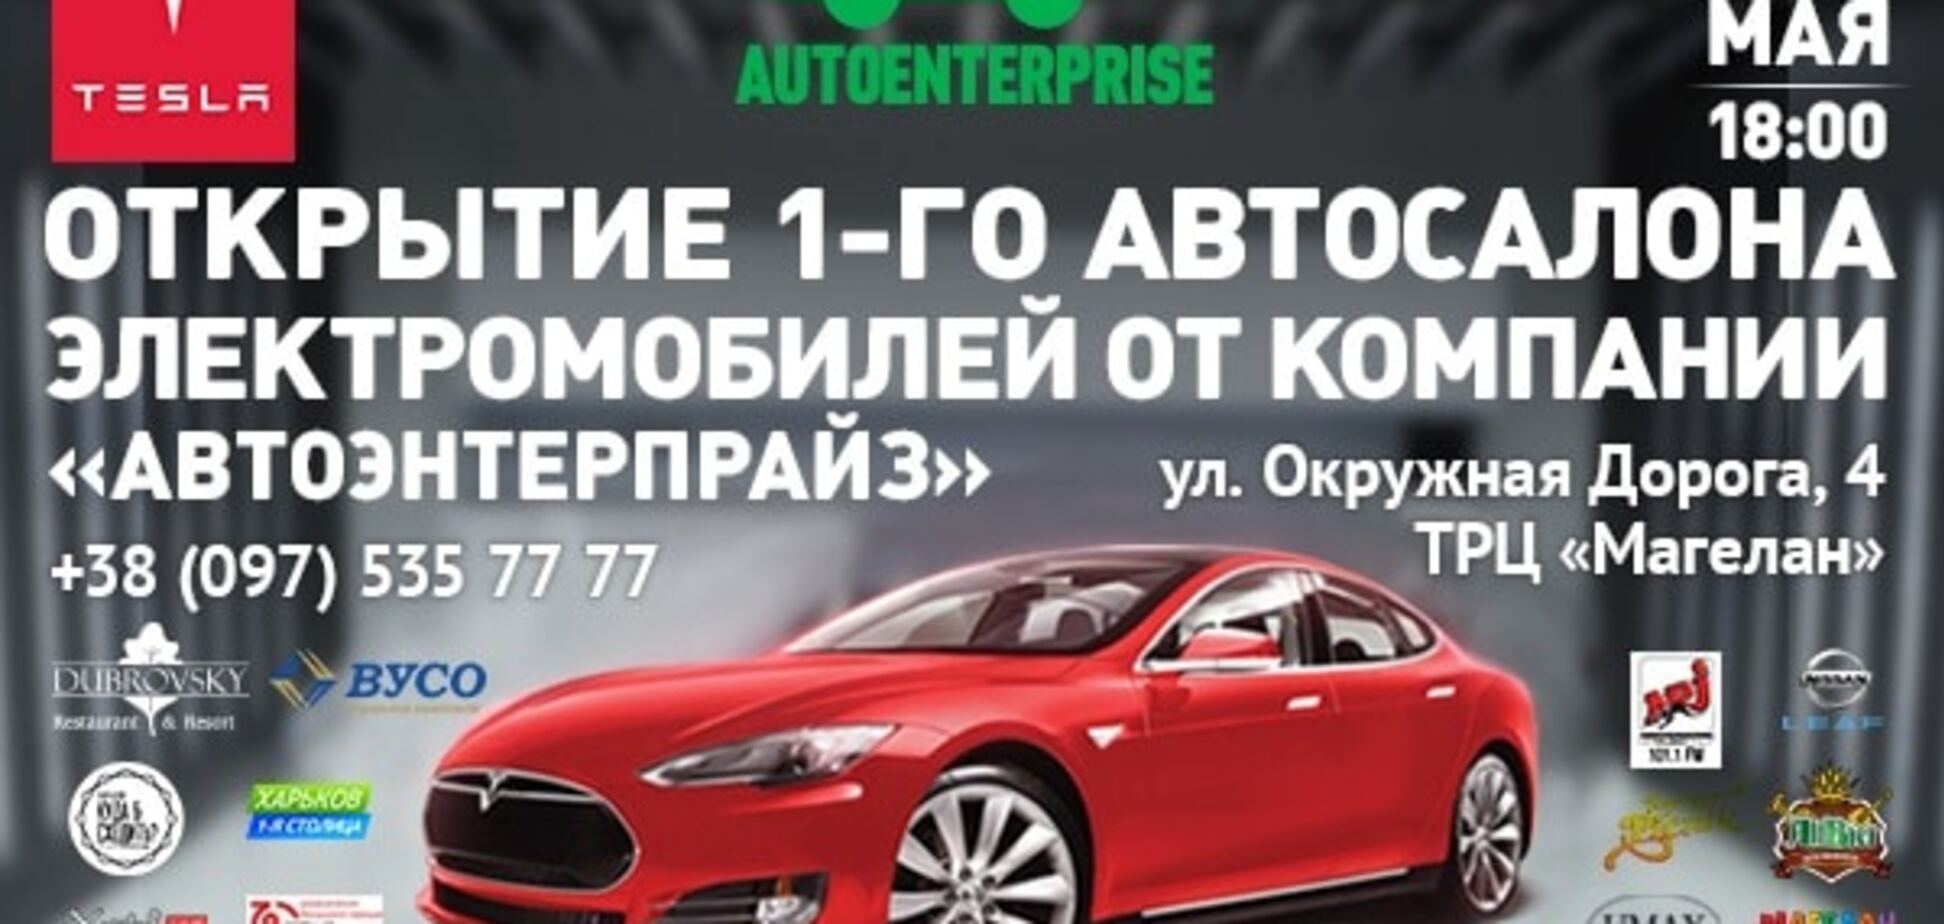 Открытие первого автосалона электромобилей от компании 'АвтоЭнтерпрайз' в г. Харьков